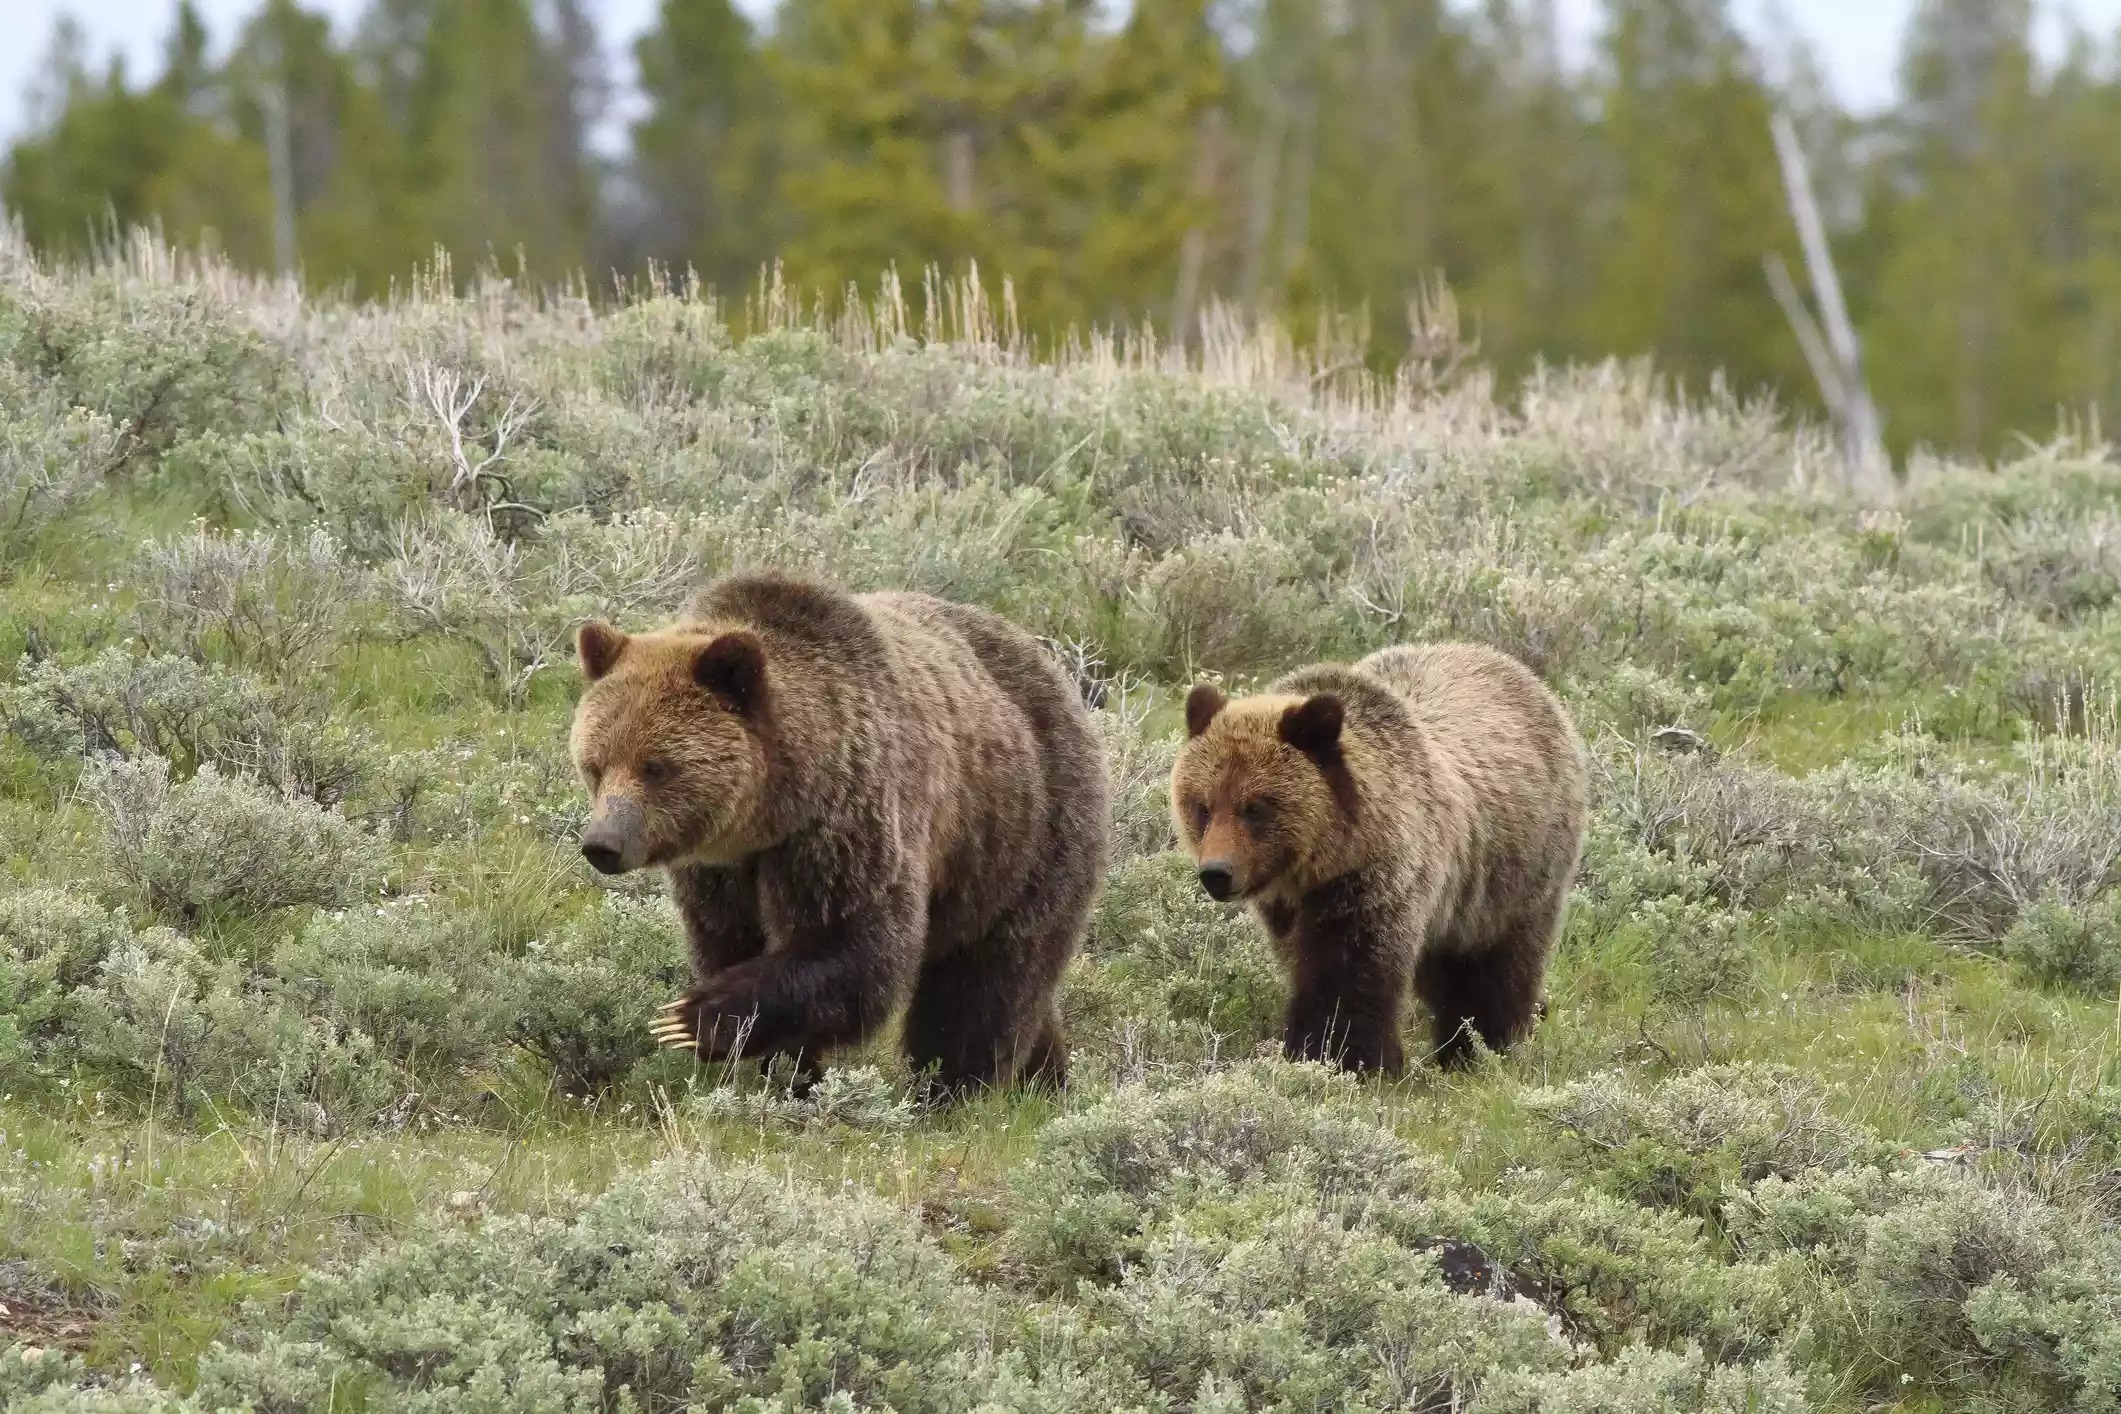 Gấu xám được bảo vệ ở Yellowstone theo Đạo luật về các loài nguy cấp. Bryant Aardema -bryants hình ảnh động vật hoang dã / Getty Images